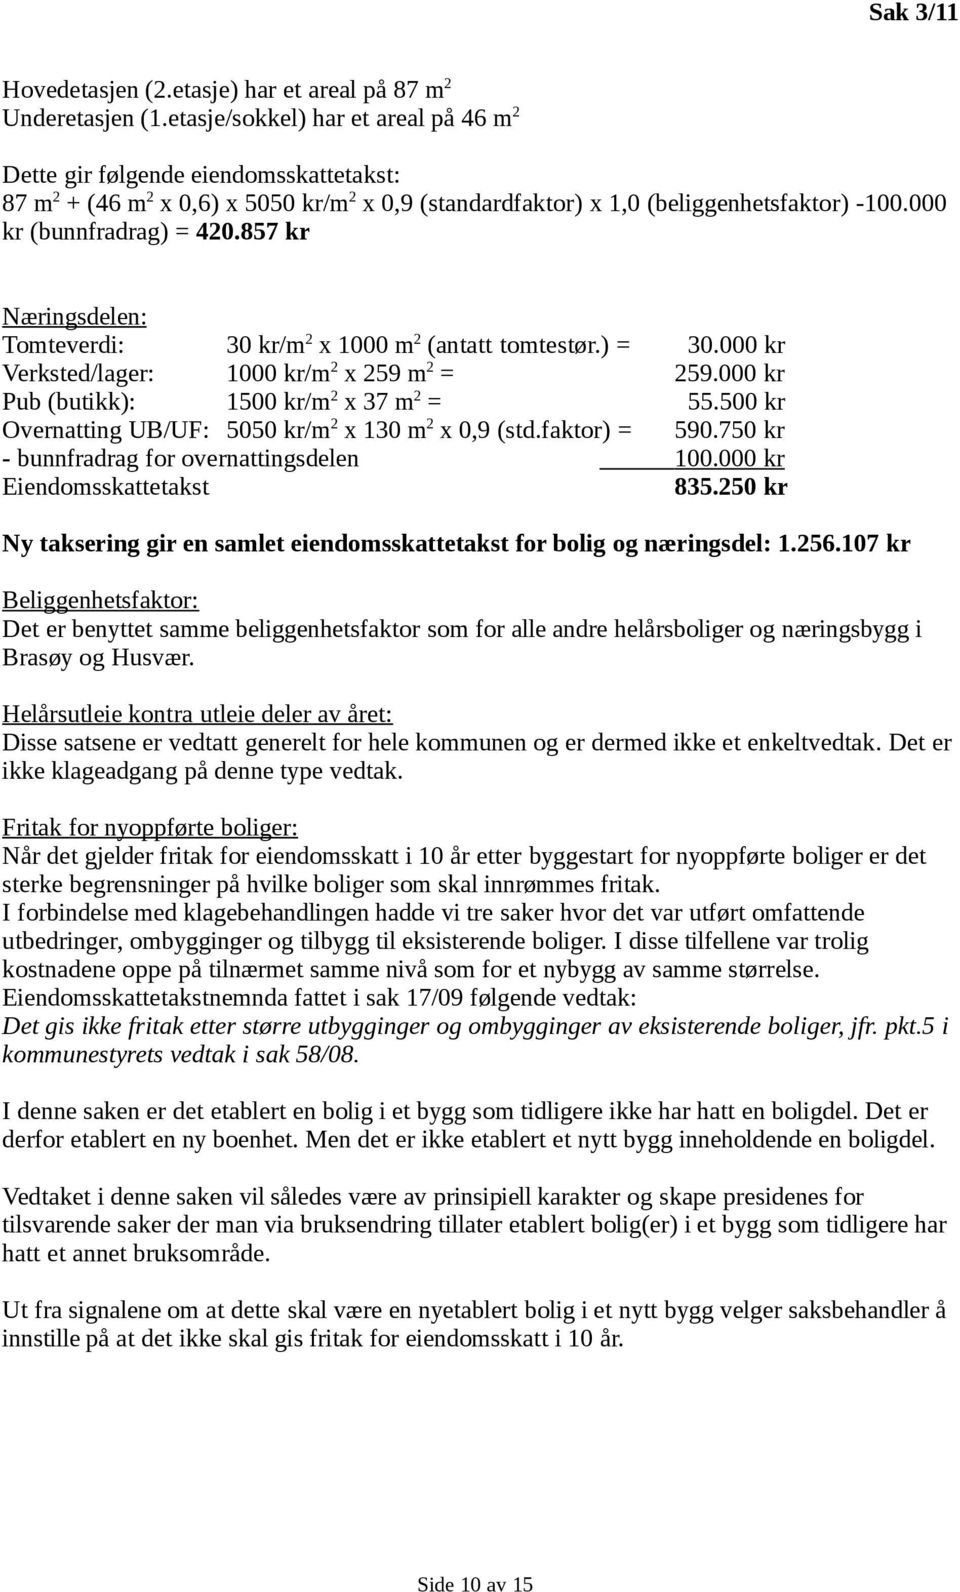 857 kr Næringsdelen: Tomteverdi: 30 kr/m 2 x 1000 m 2 (antatt tomtestør.) = 30.000 kr Verksted/lager: 1000 kr/m 2 x 259 m 2 = 259.000 kr Pub (butikk): 1500 kr/m 2 x 37 m 2 = 55.